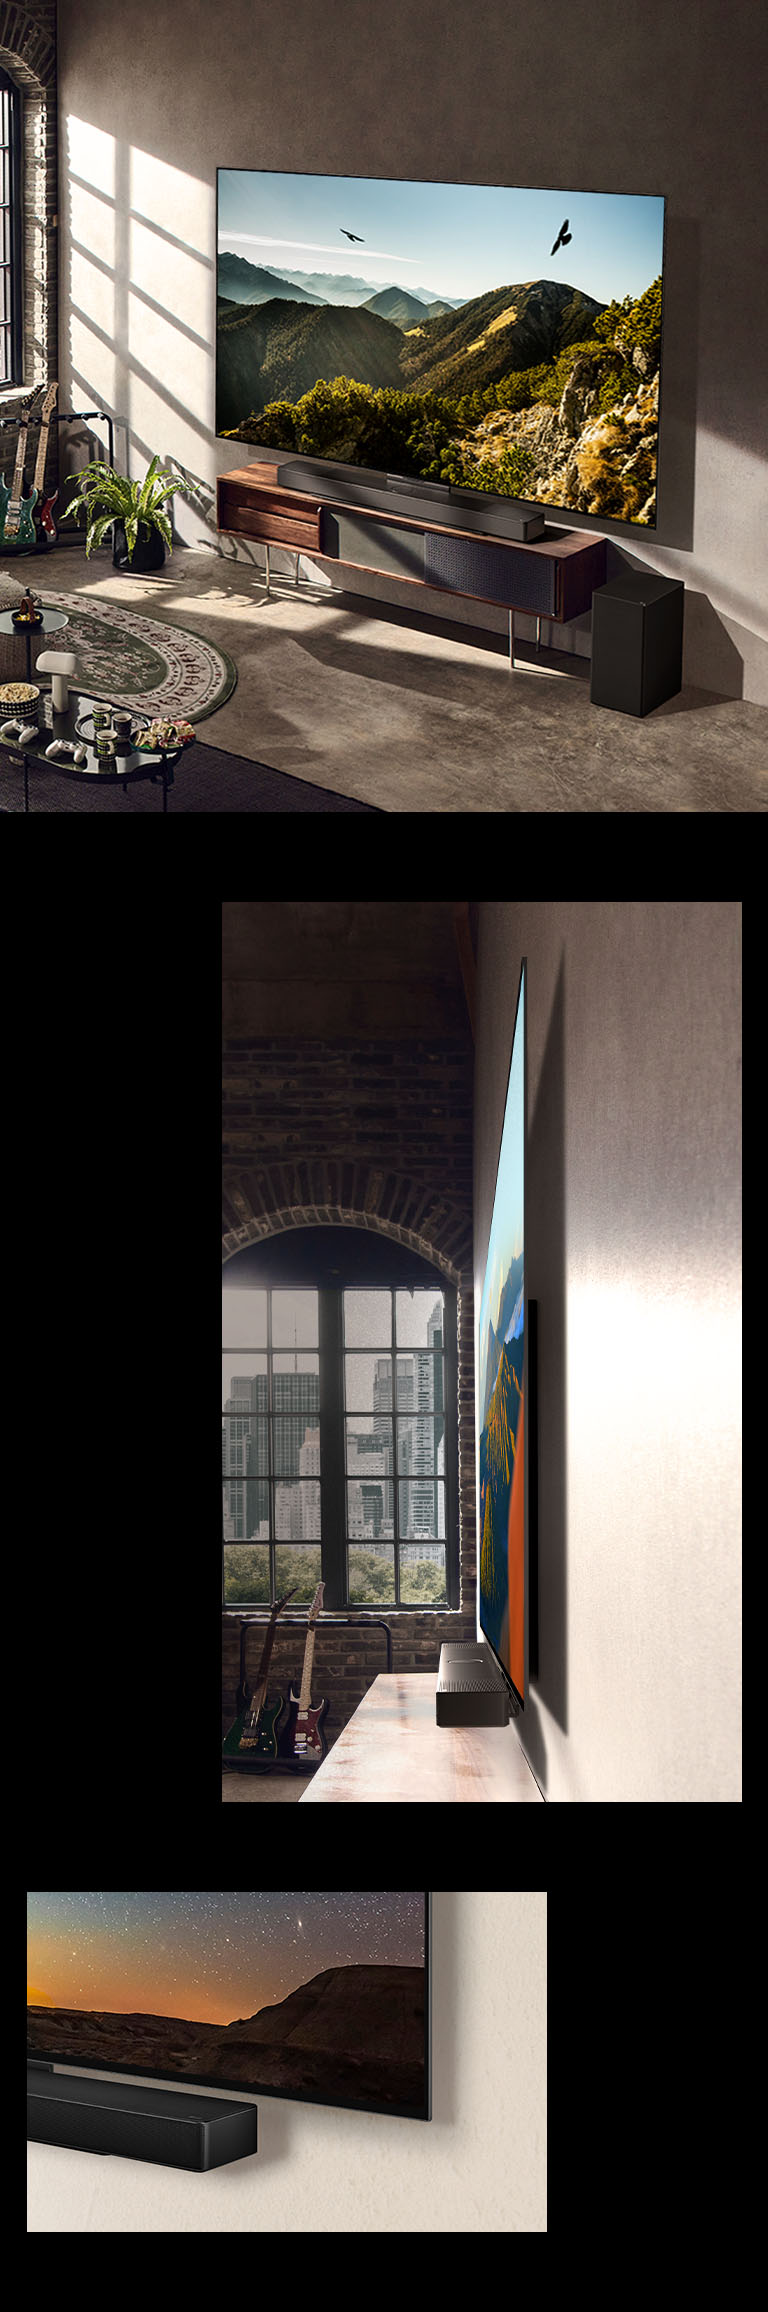 Hình ảnh LG OLED C3 với Soundbar trên tường trong một căn phòng nghệ thuật. Một góc nhìn bên của kích thước mỏng của LG OLED C3 ở phía trước cửa sổ nhìn ra cảnh quan thành phố. Góc dưới cùng của LG OLED C3 và Soundbar.